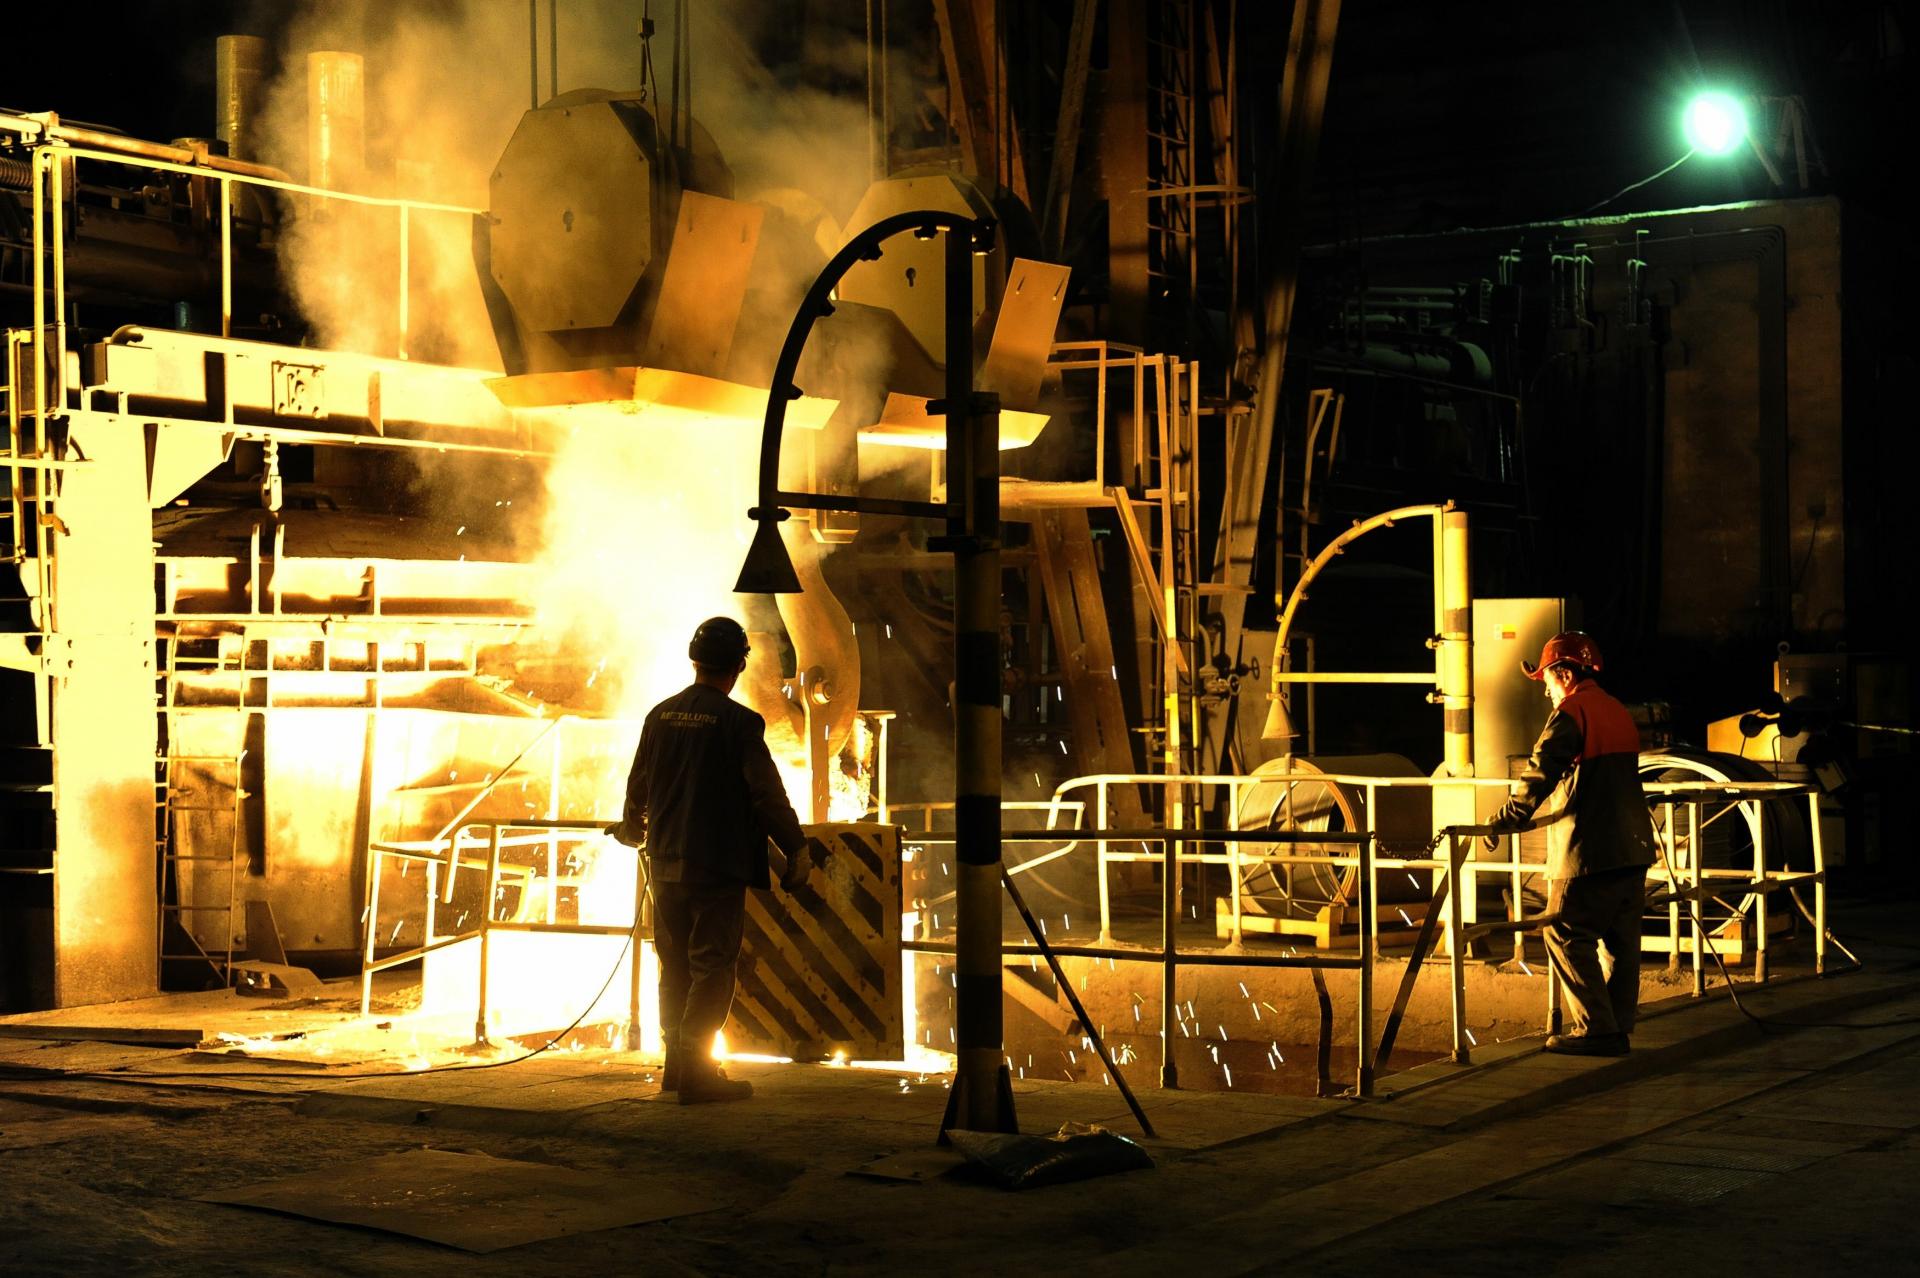 Oceľ padá, zlaté časy jej výrobcov sa končia. Závan recesie cíti aj košická U. S. Steel